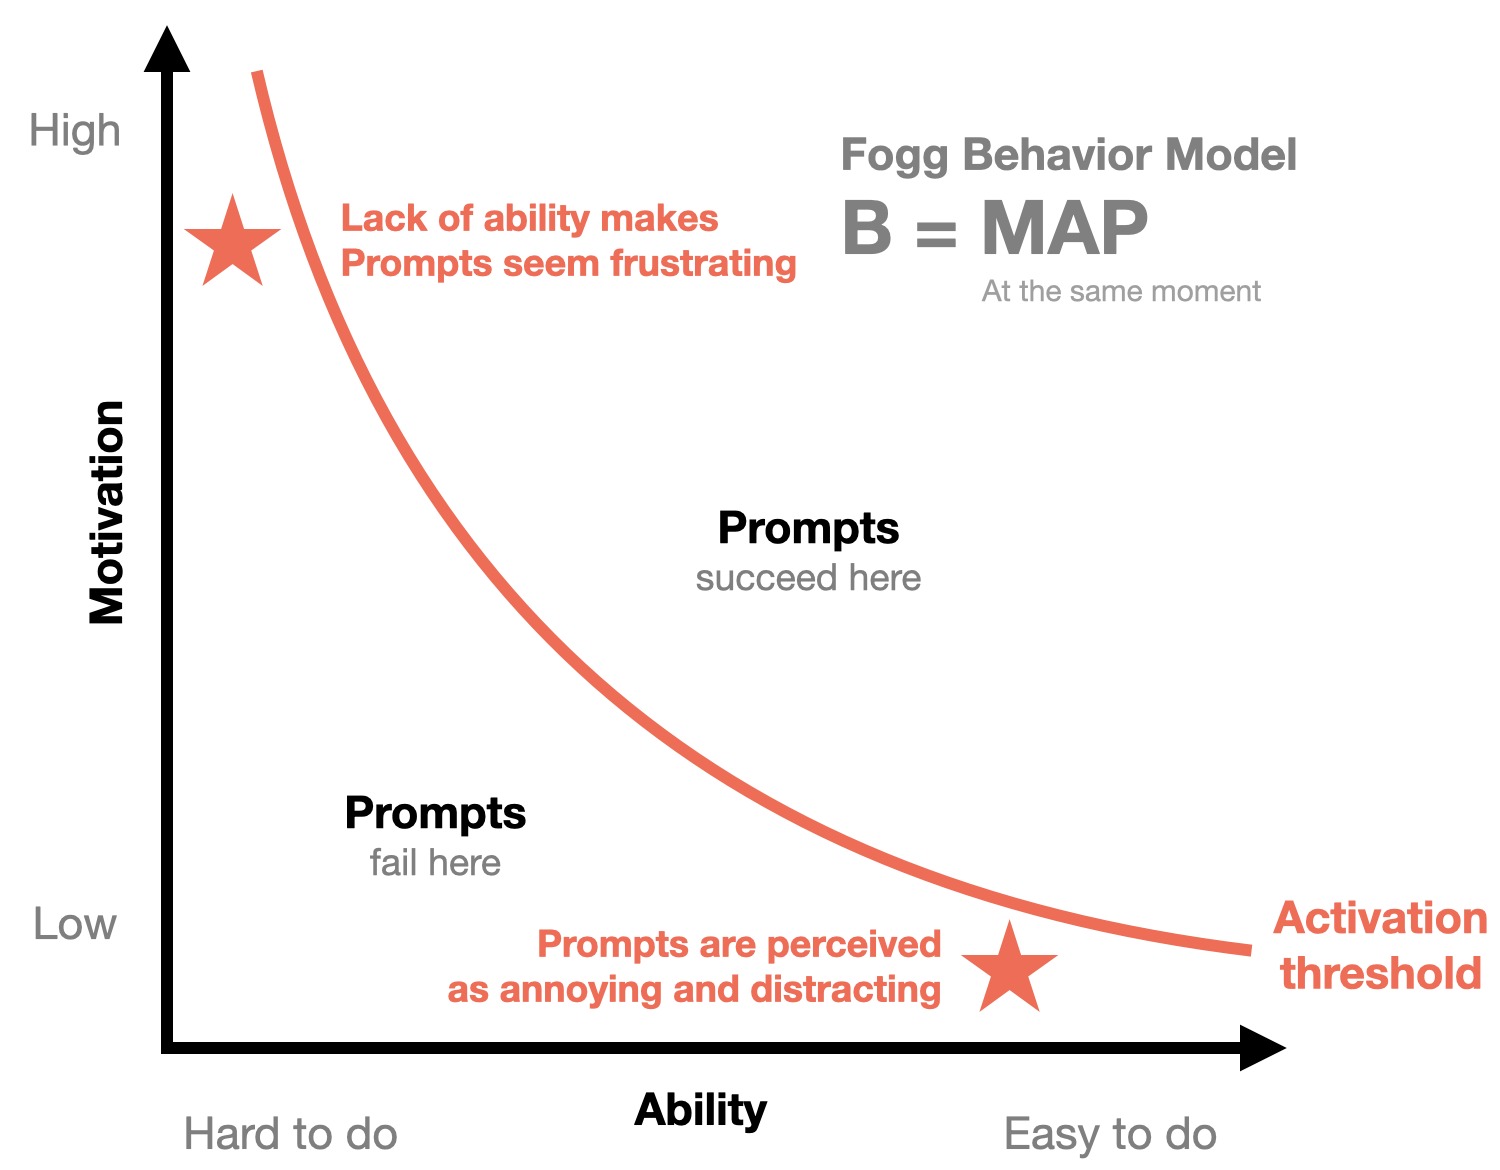 The Behavior Model